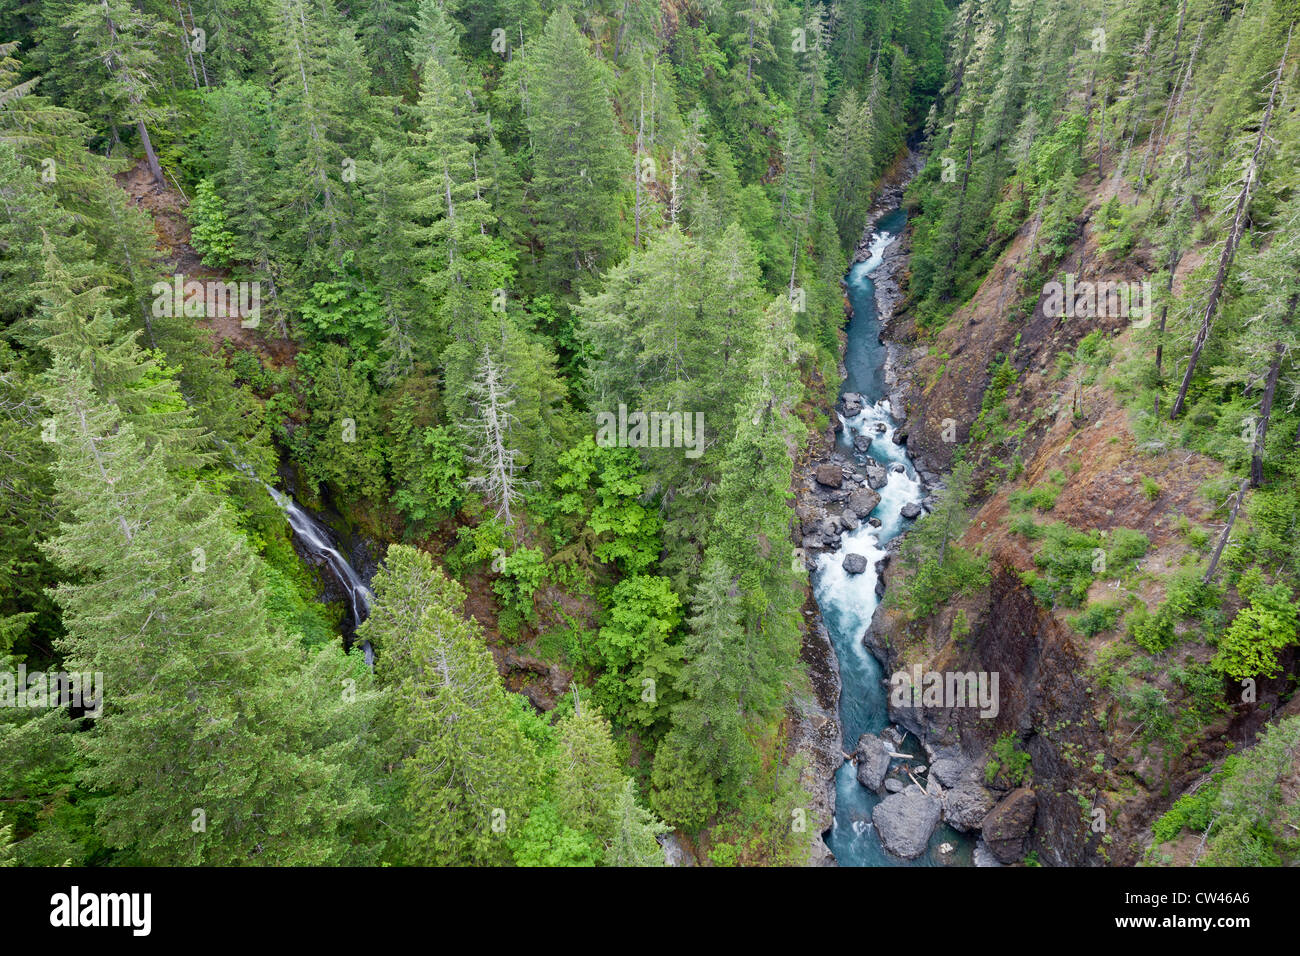 USA, Washington State, Olympic National Forest, Skokomish River Stock Photo